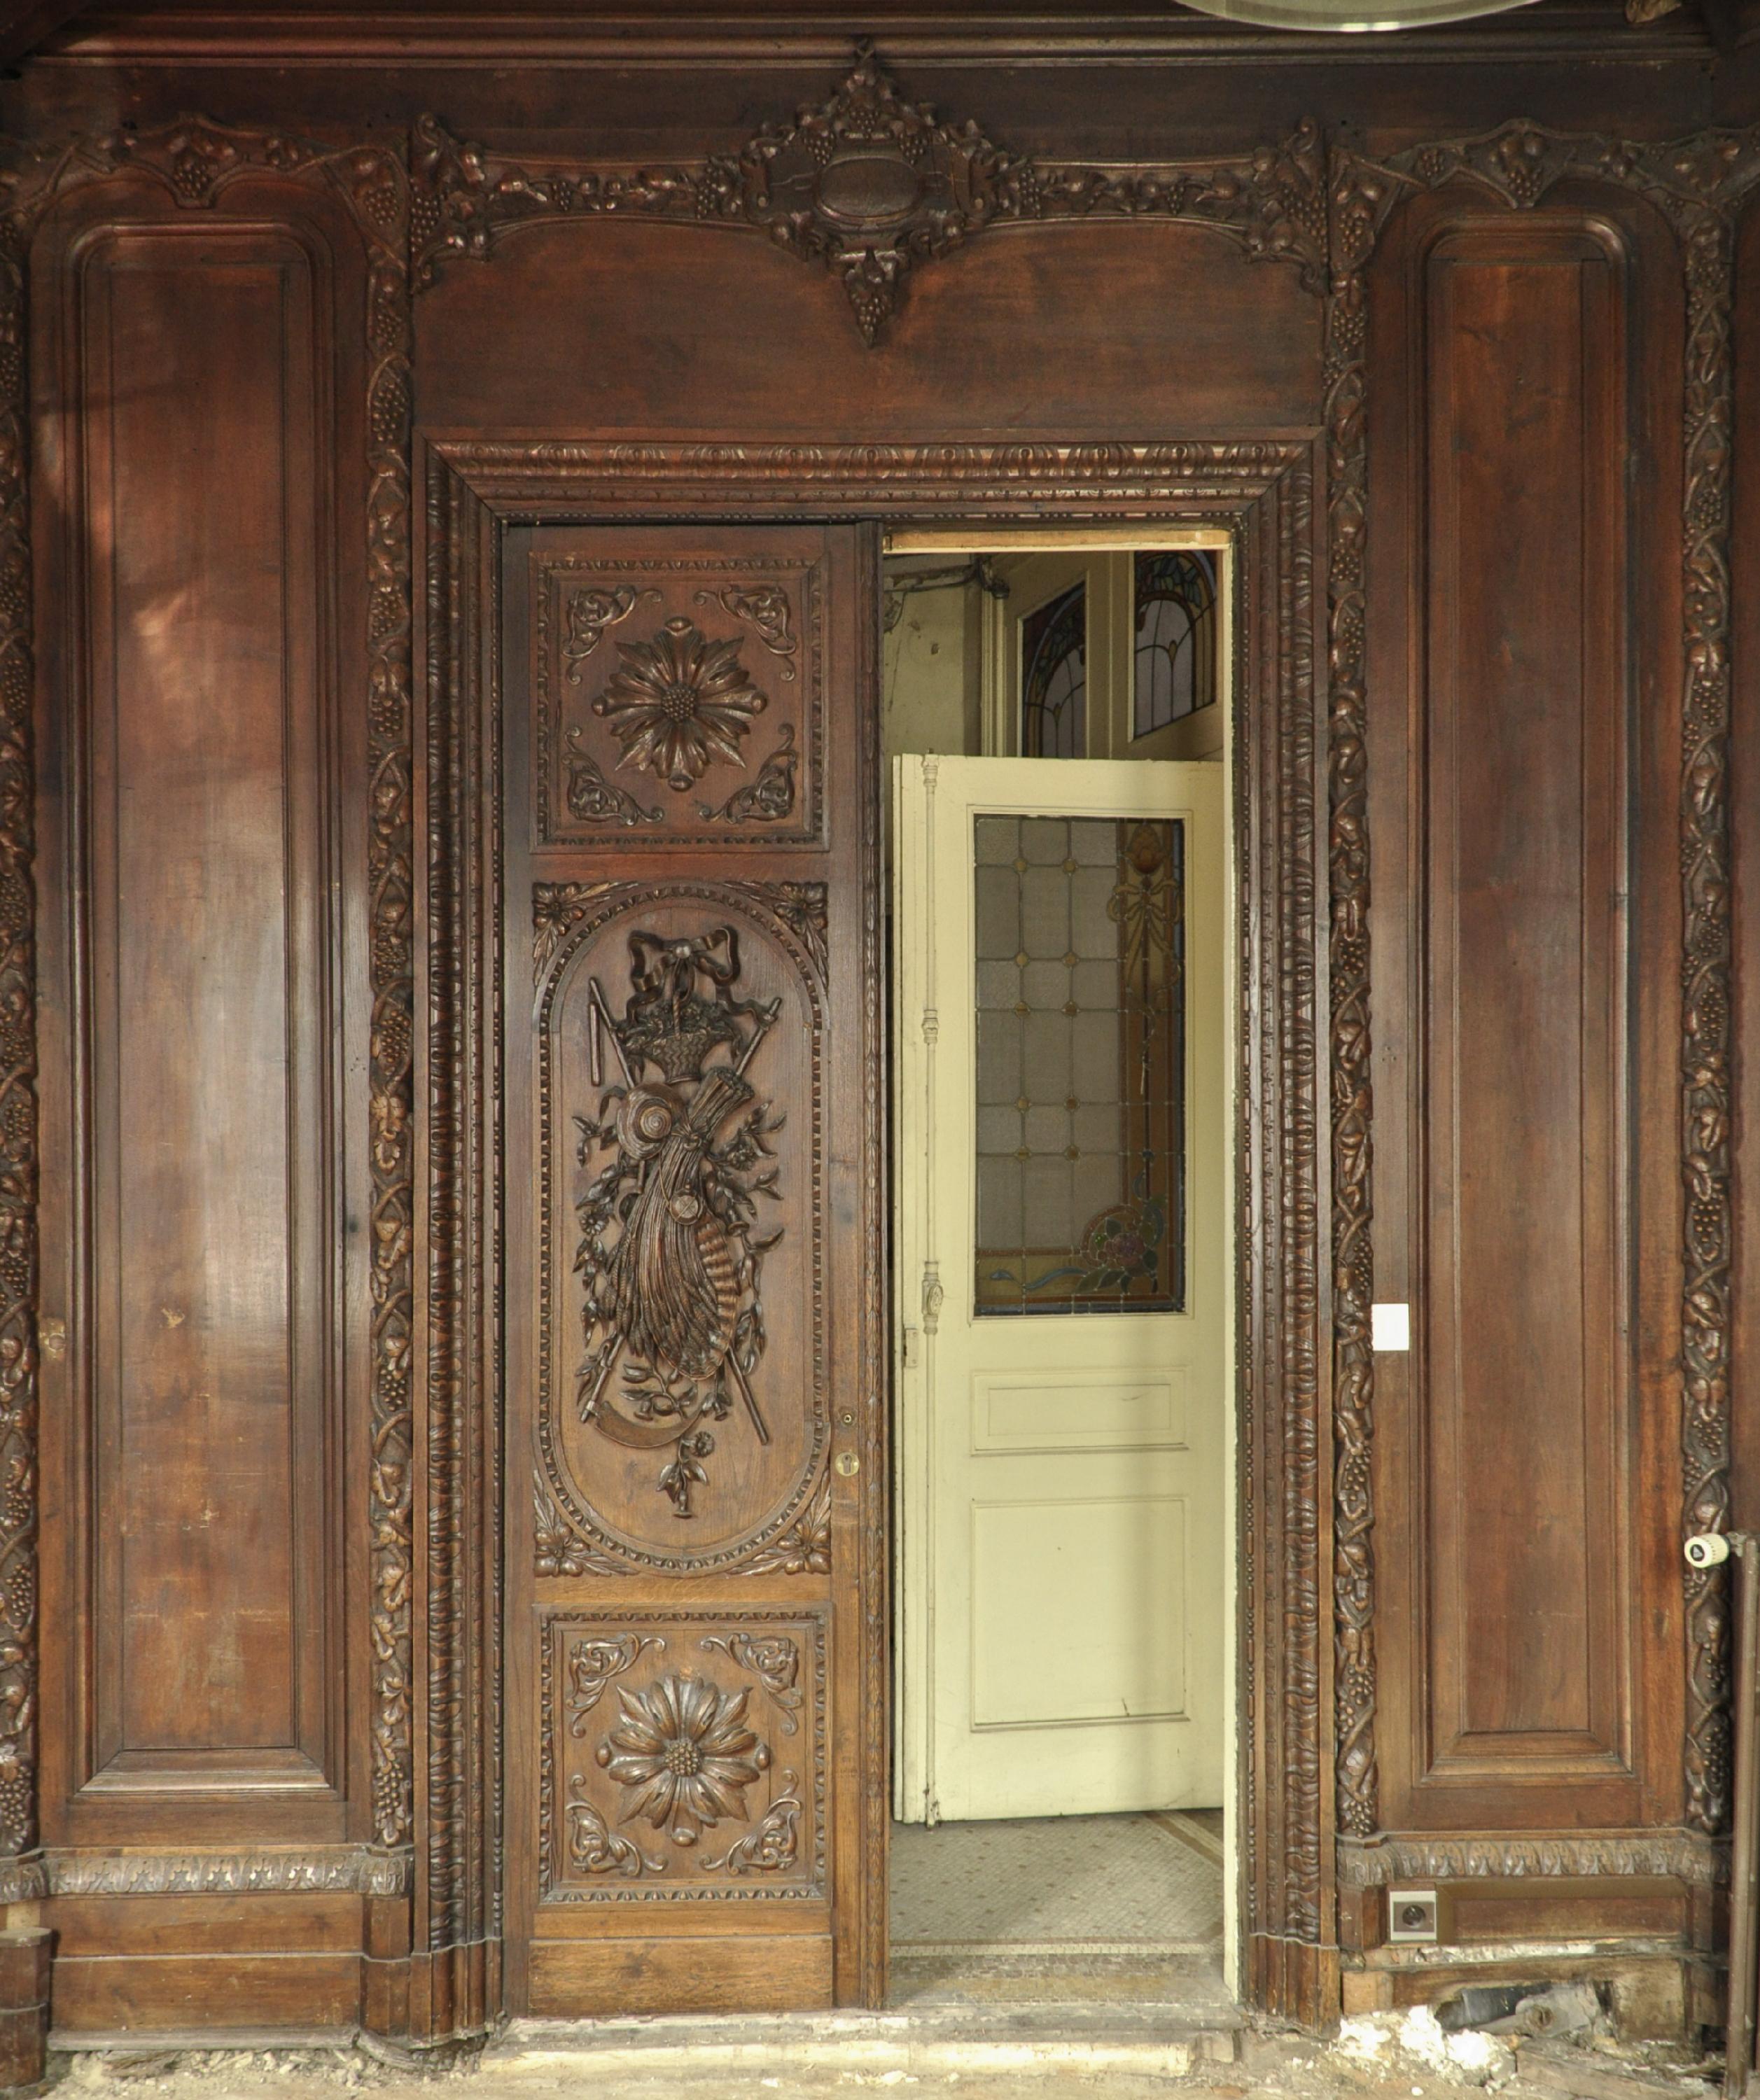 Dieses schöne, mit Eichenholz getäfelte Zimmer stammt aus dem 19. Jahrhundert.
Ursprünglich für einen sechseckigen Raum mit einem Boudoir entworfen, besteht es aus sechs geschnitzten Wandpaneelen. Drei Paneele haben Fensteröffnungen, zwei sind mit